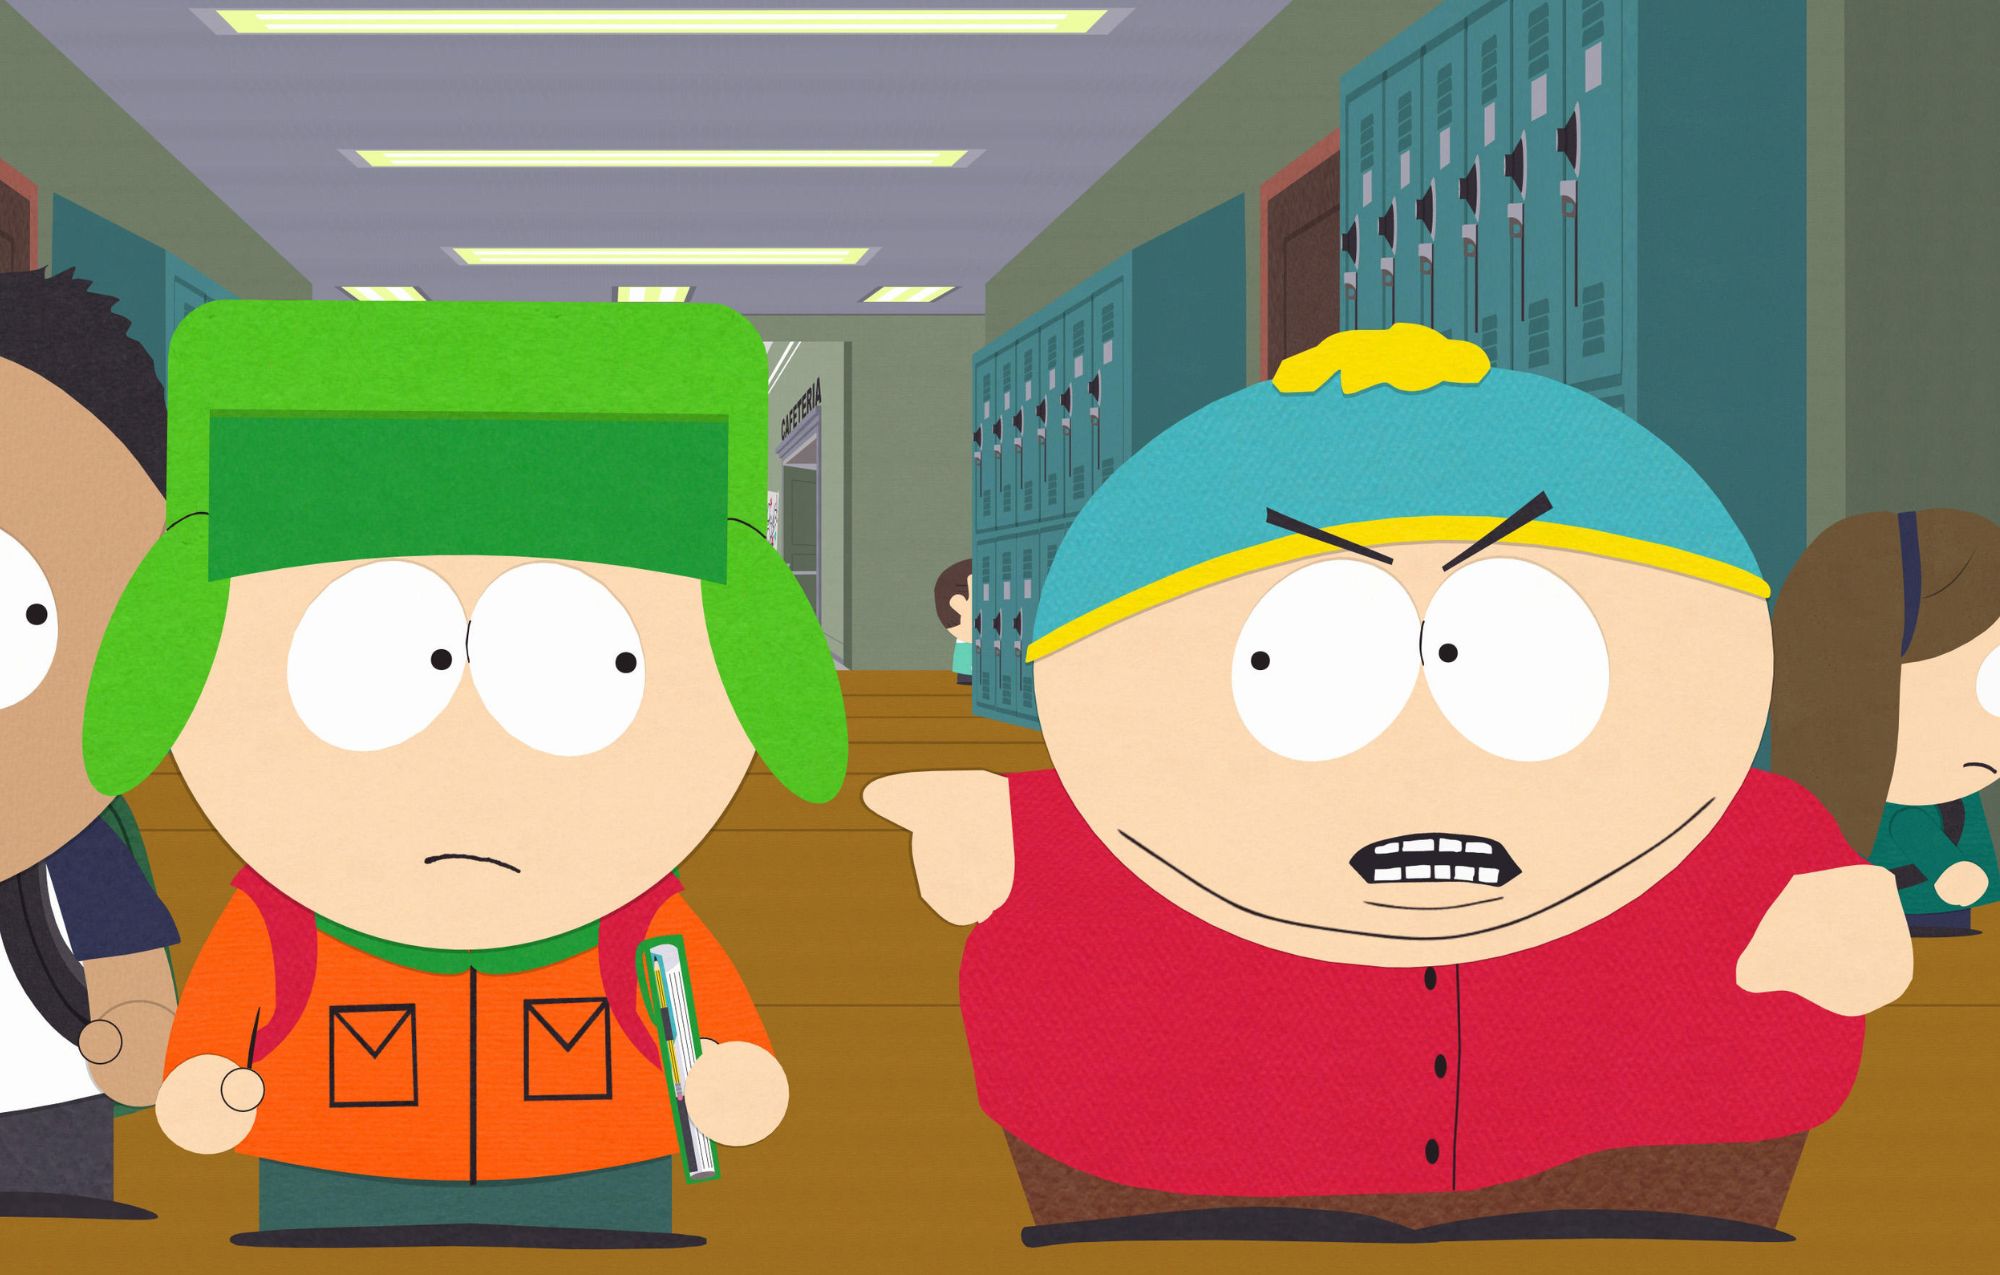 South Park se burla del antisemitismo de Kanye West en un nuevo episodio